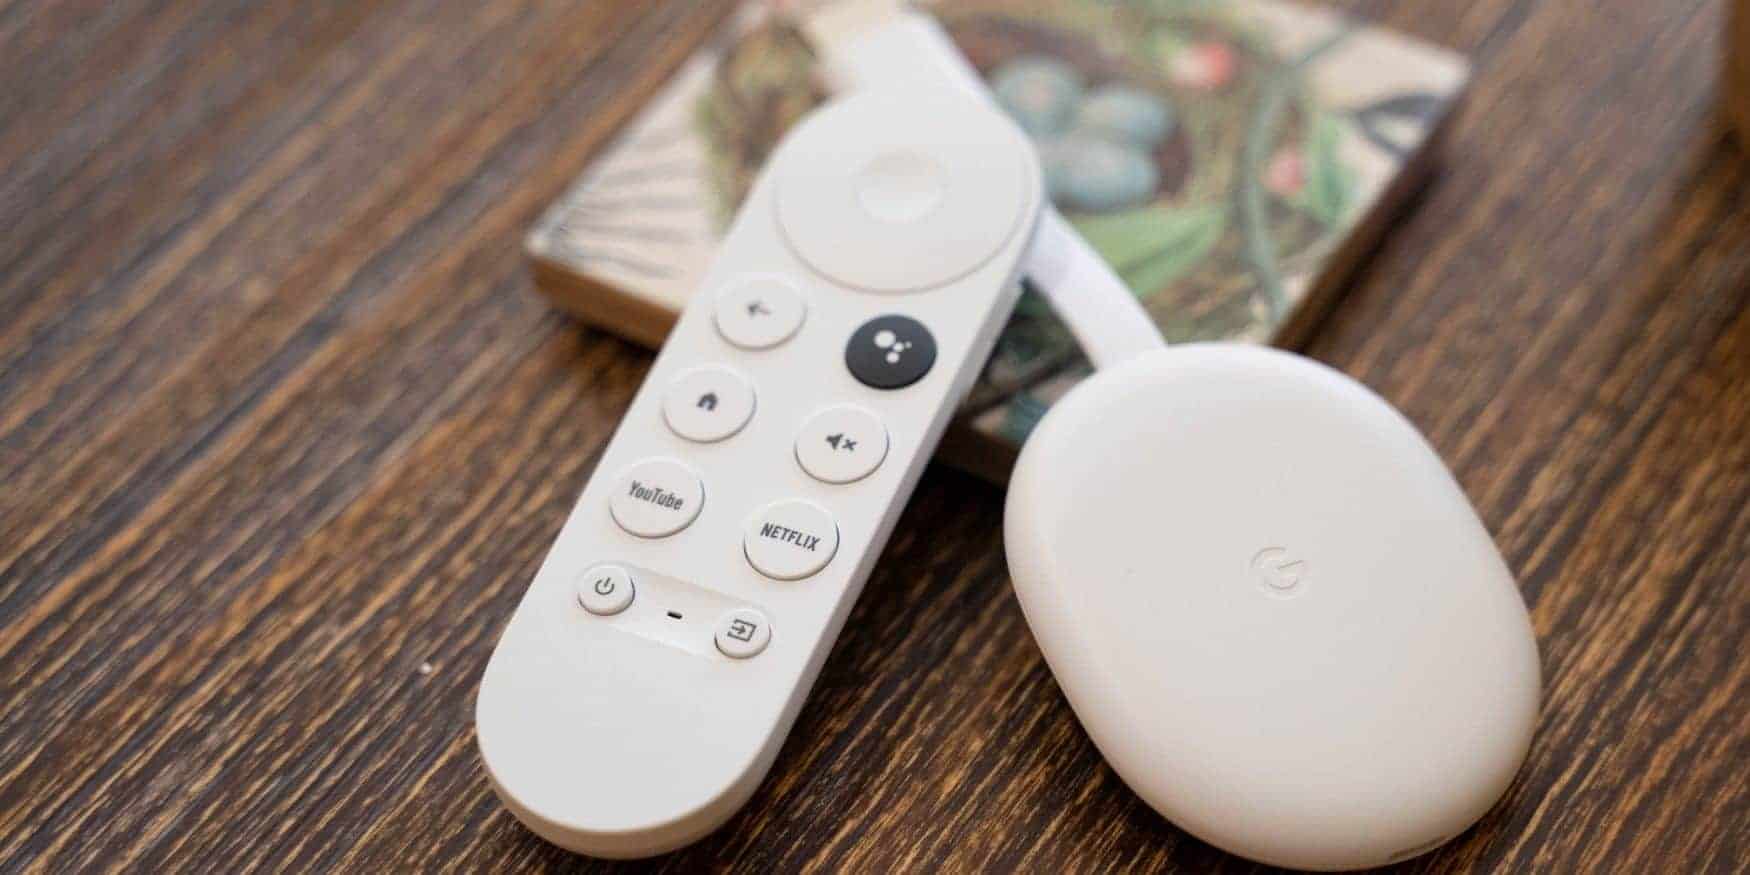 Novo dispositivo Chromecast com Google TV pode estar chegando em breve